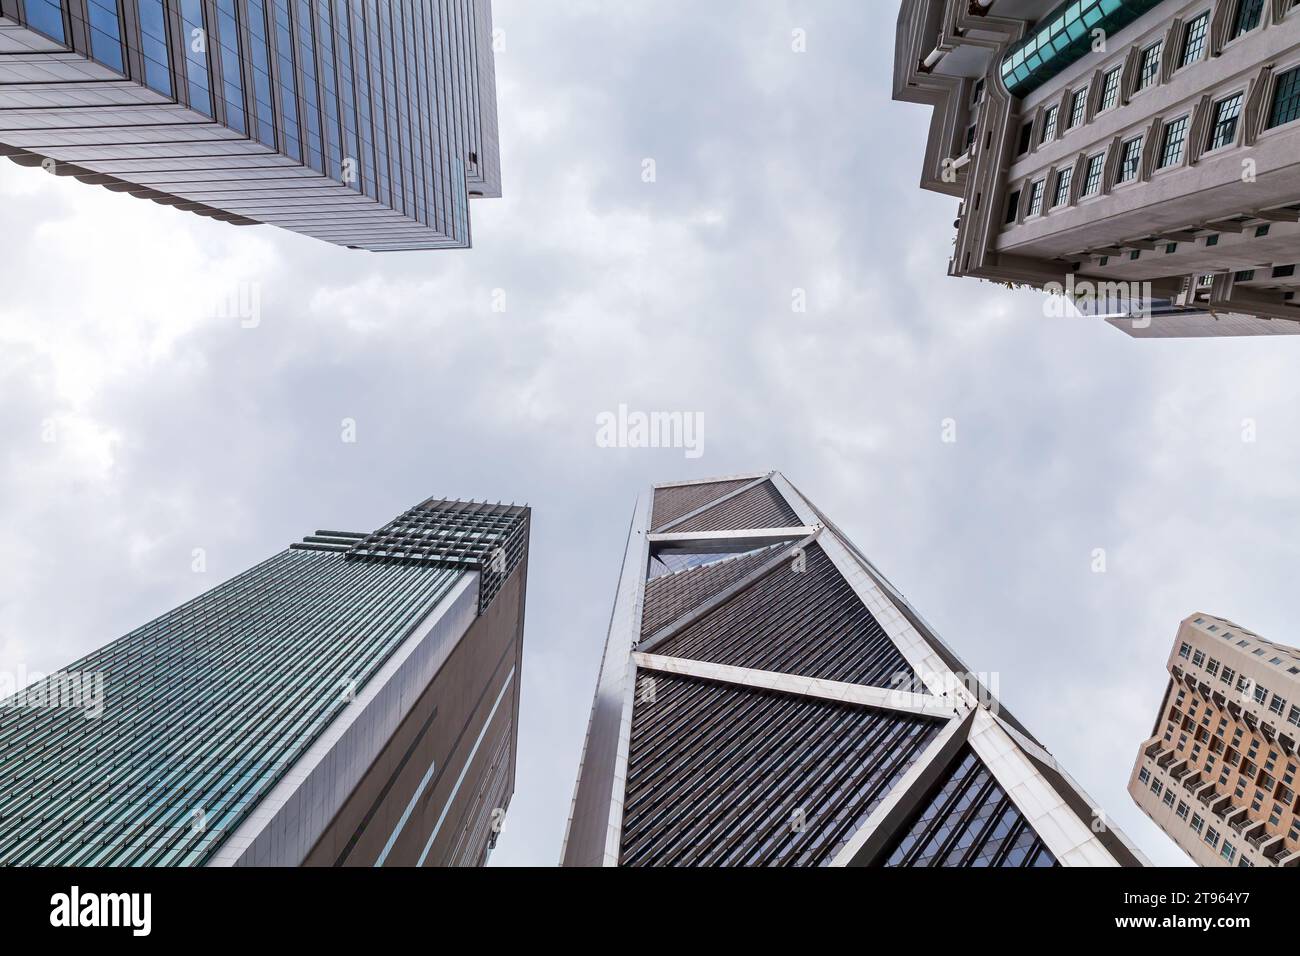 Kuala Lumpur, Malaisie - 25 novembre 2019 : vue sur la ville de Kuala Lumpur, les gratte-faux sont sous un ciel nuageux lumineux, vue de bas en haut Banque D'Images